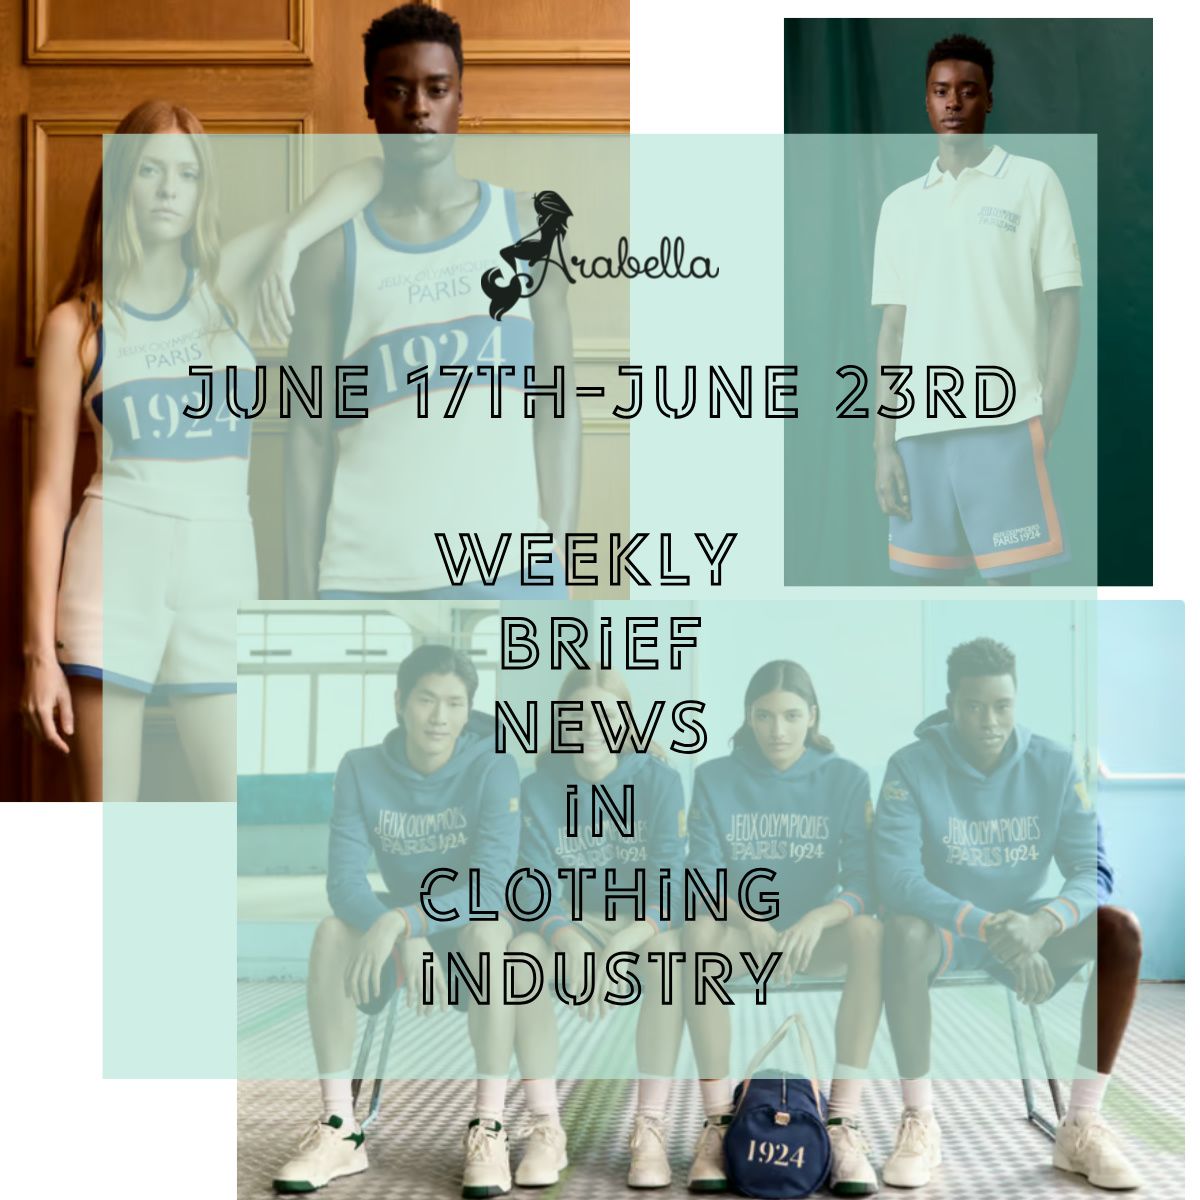 अरेबेला |बड़े खेल के लिए तैयार हो जाइए: 17 से 23 जून के दौरान वस्त्र उद्योग की साप्ताहिक संक्षिप्त खबरें